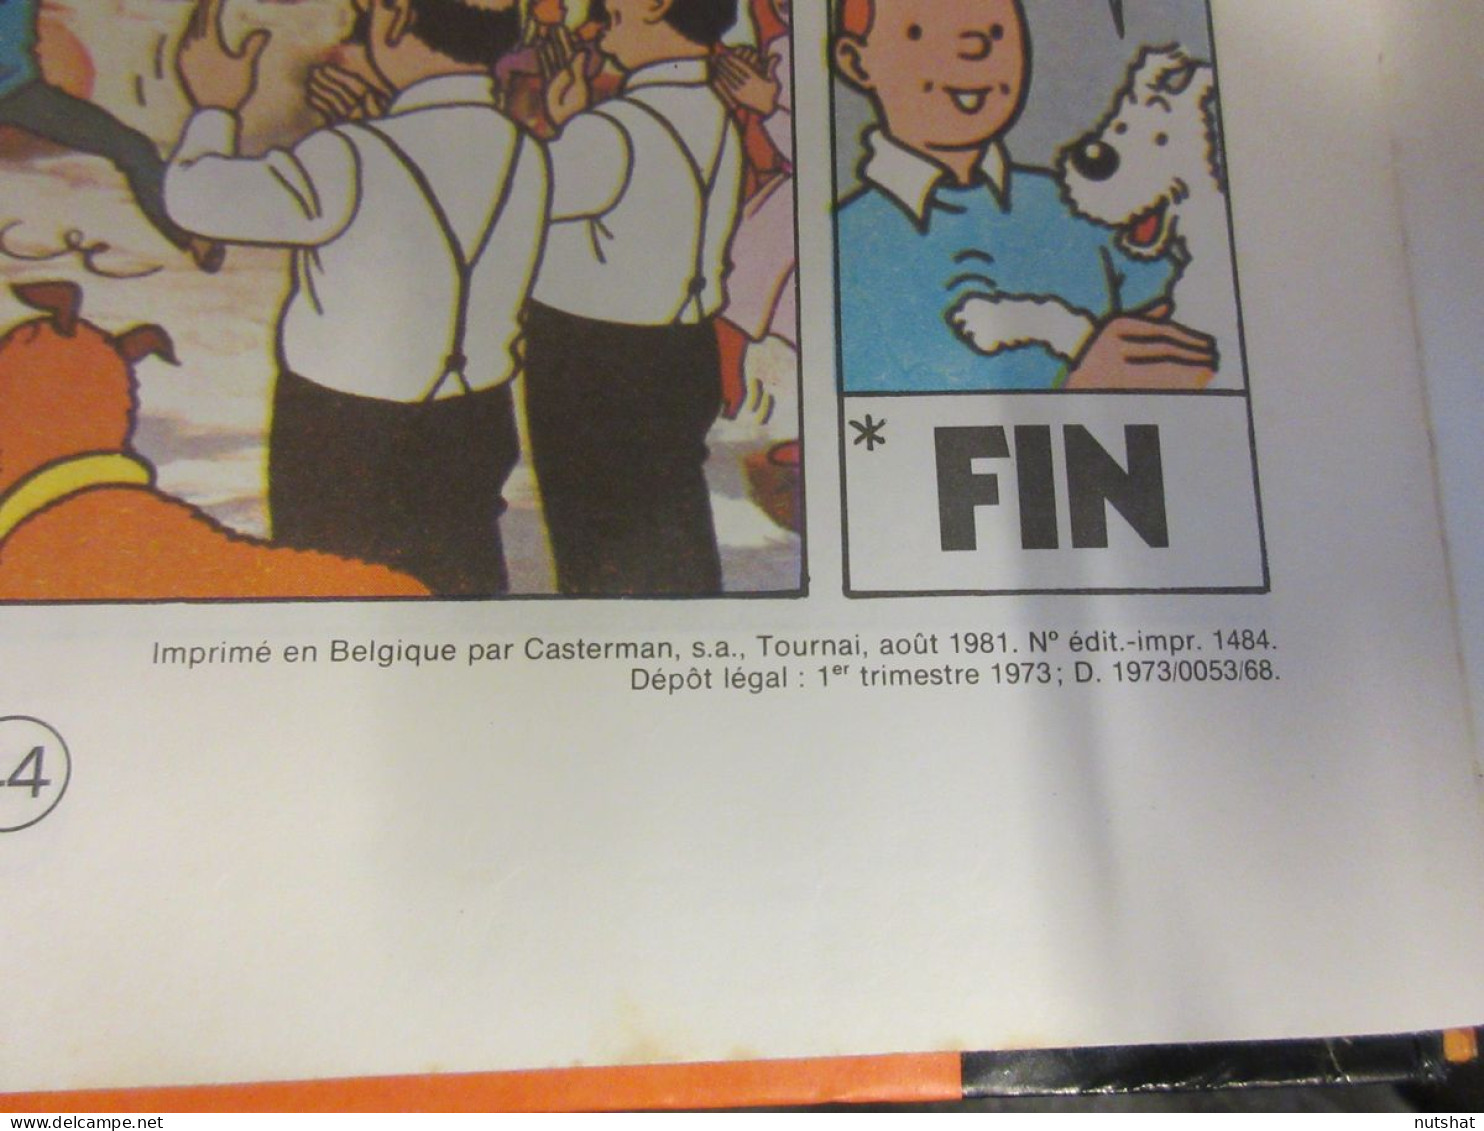 BD Les AVENTURES De TINTIN - TINTIN Et Le LAC Aux REQUINS - HERGE - CASTERMAN - Tintin